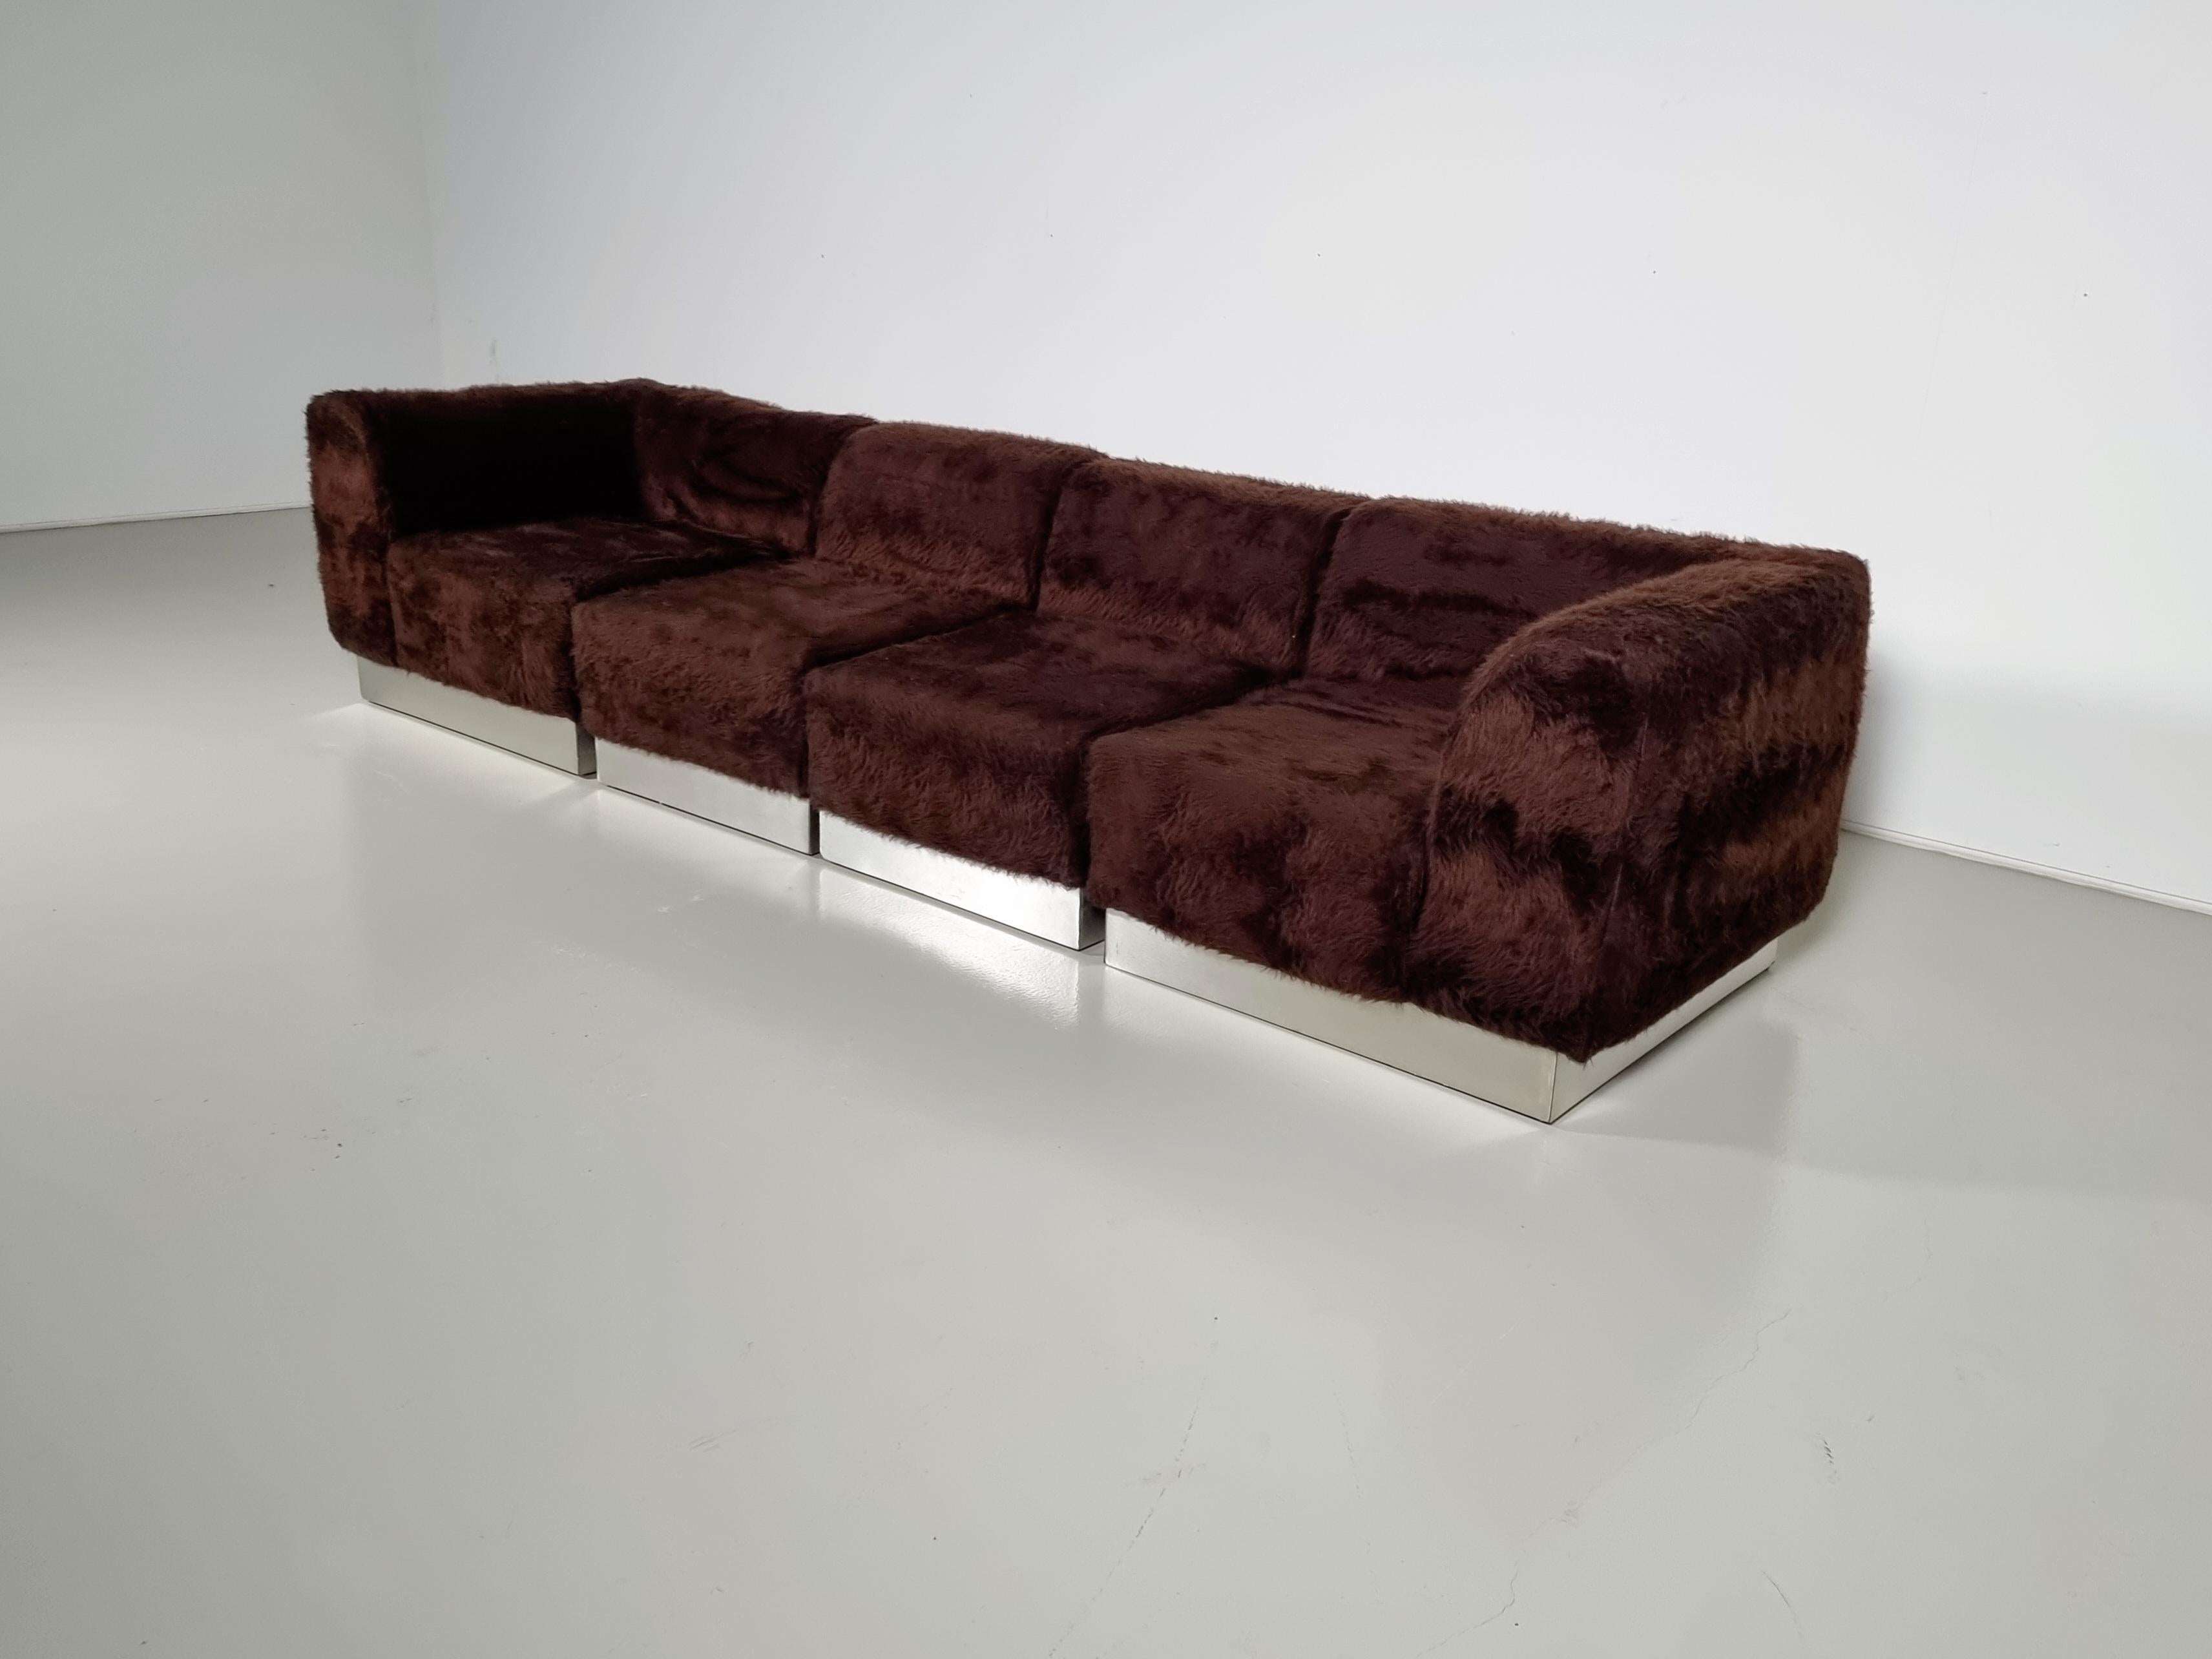 Vintage Italian sectional sofa, chrome plated, faux fur, the 1970s

Il a une apparence détendue et facile à vivre qui correspond à son niveau de confort. Ce design est un excellent complément à tout coin salon ou salle de séjour.  Dans le tissu, on